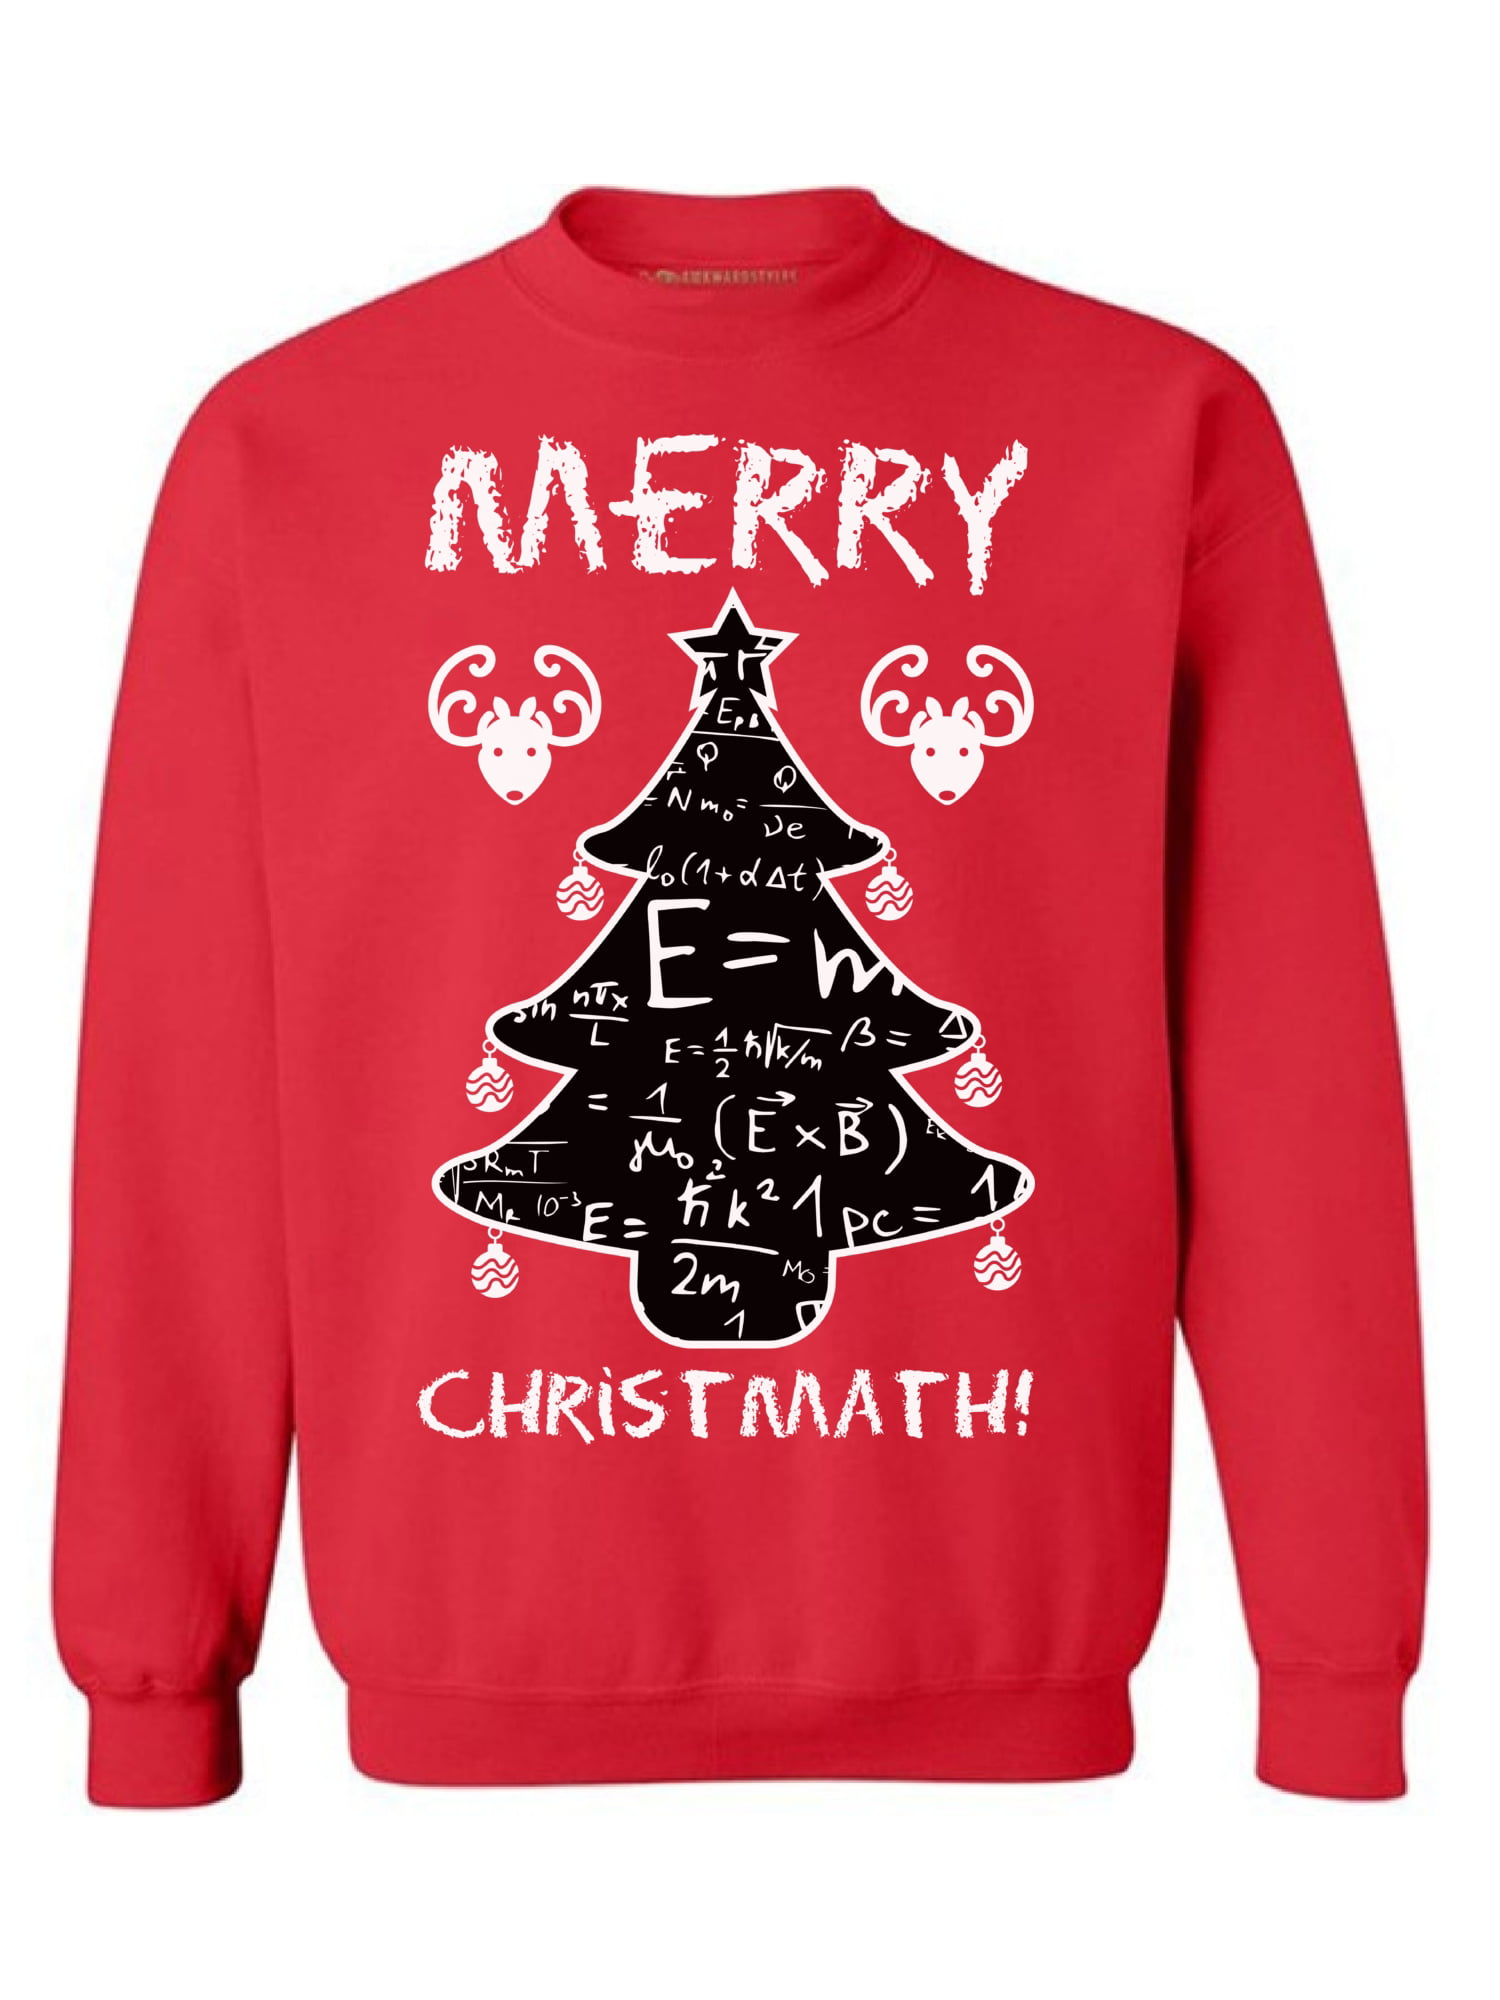 Christmas Sweatshirt Christmas Sweater for Women Mistletoe Christmas Sweater for Men Merry and Bright Merry Sweatshirt